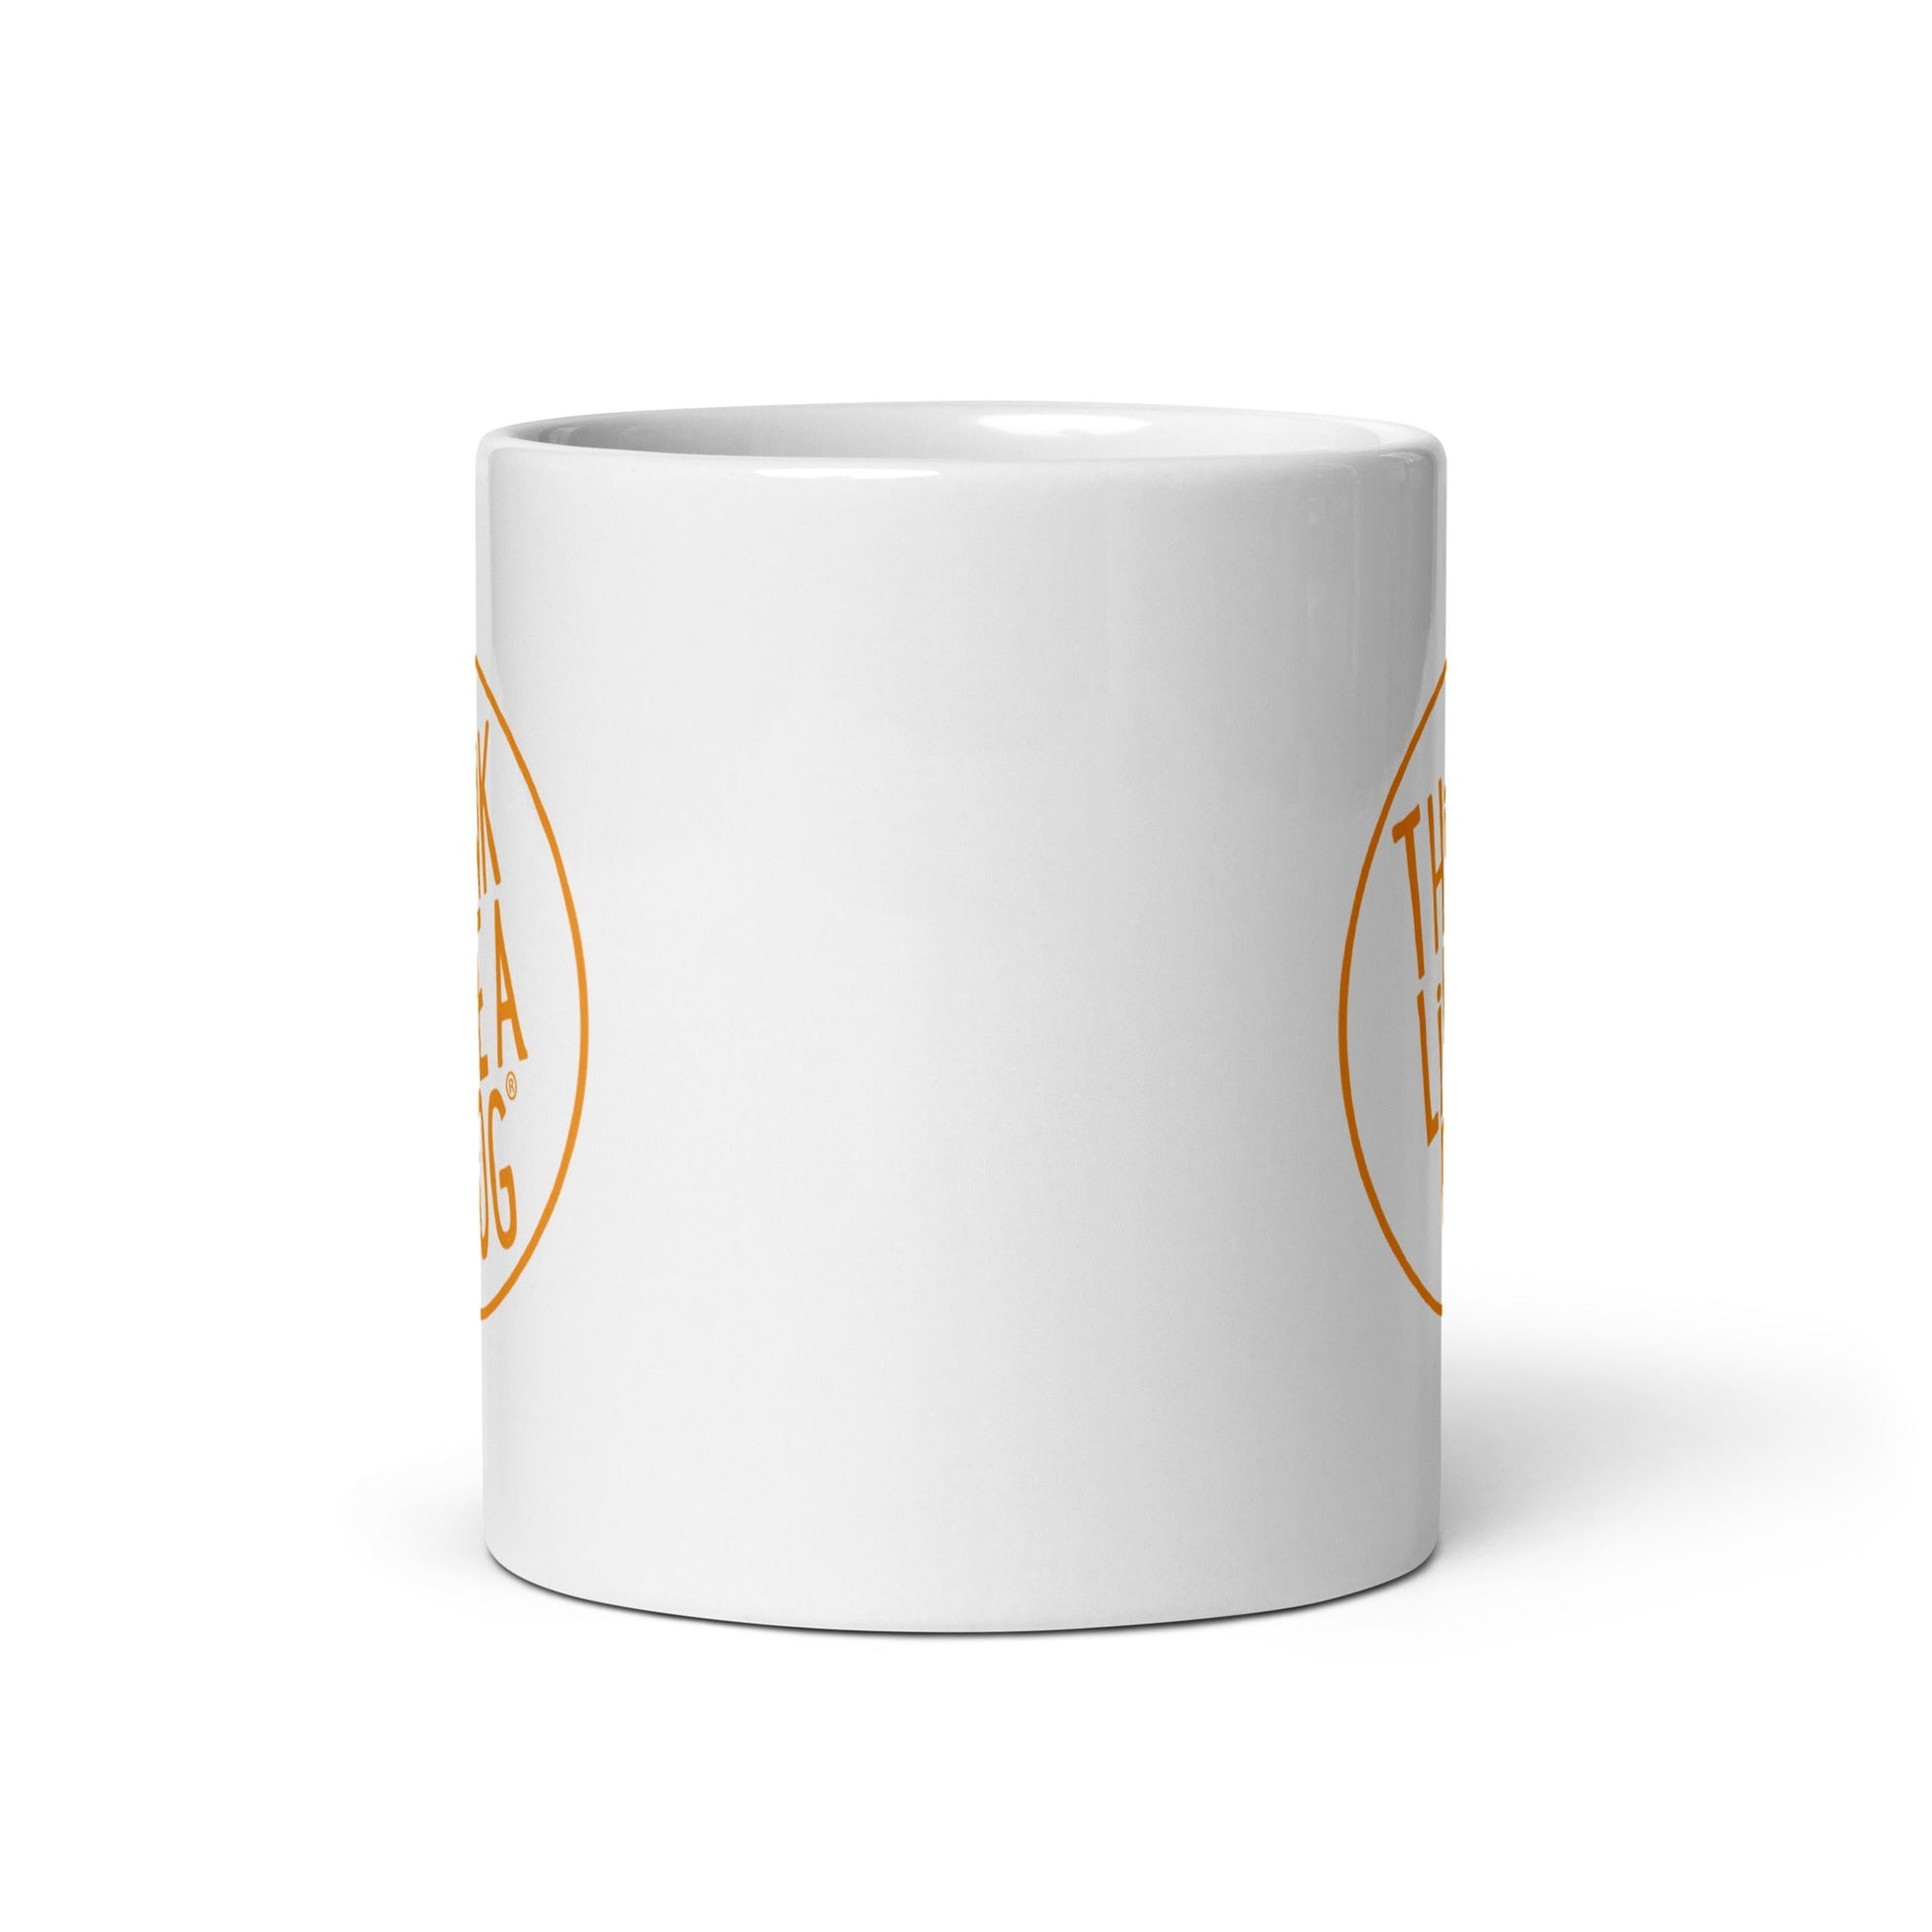 A THiNK LiKE A DOG® Orange Logo on White Glossy Mug for dog lovers with orange circles.